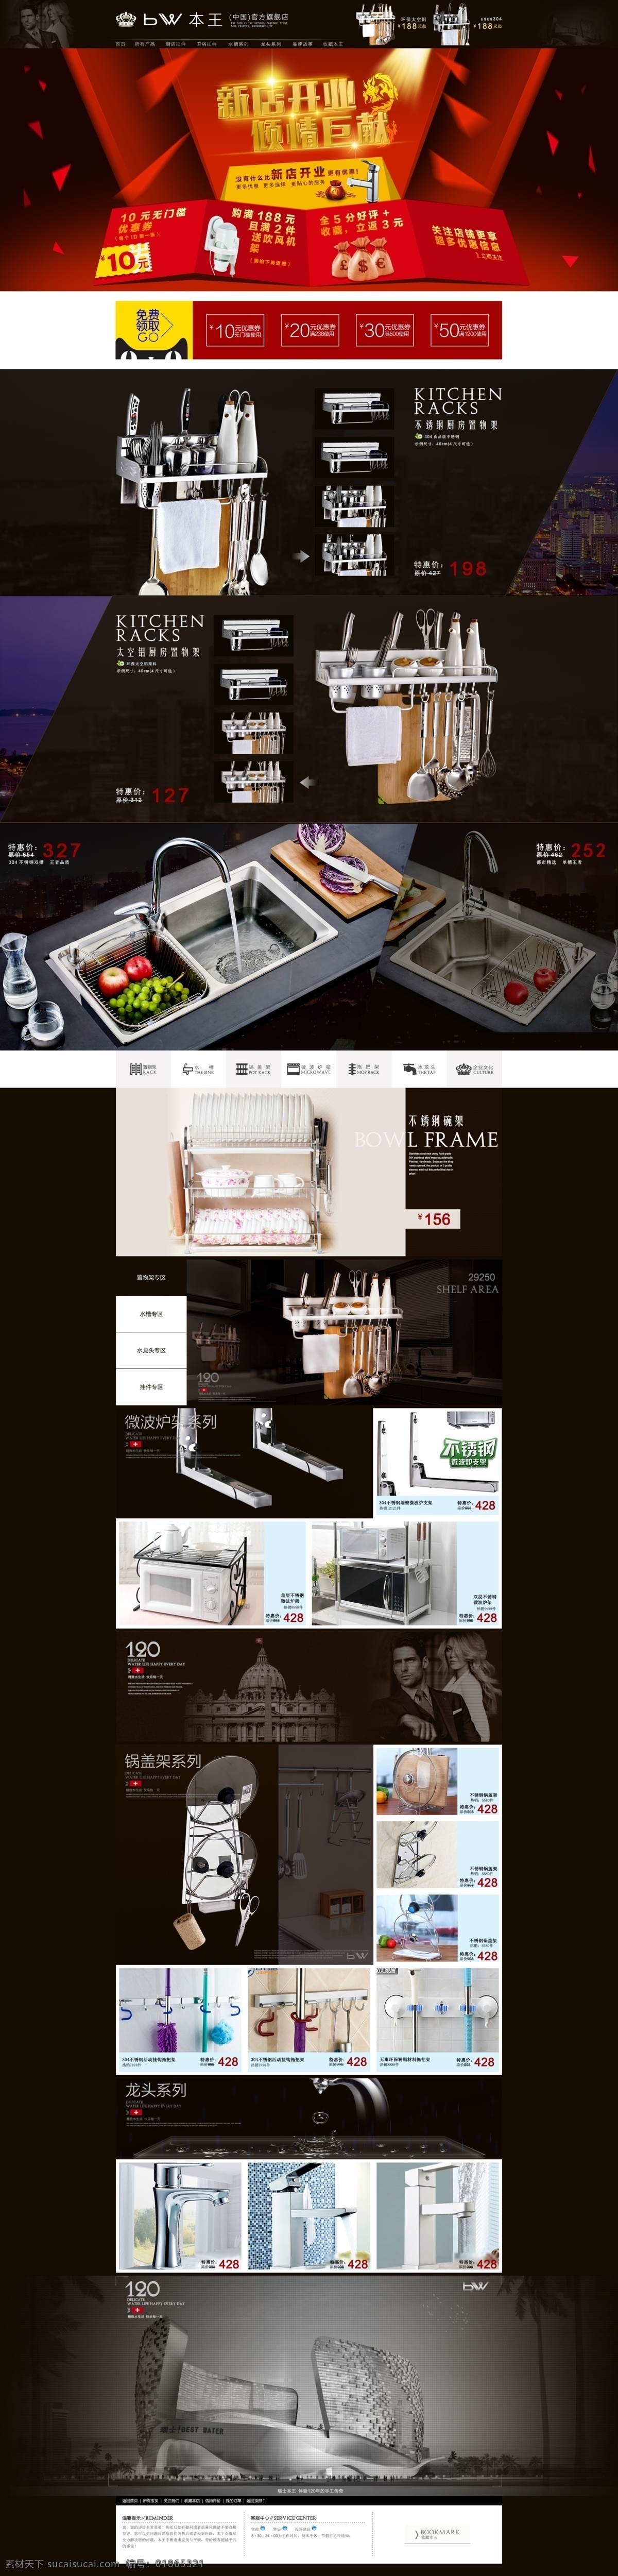 天猫 高端 电商 网页设计 大气 原创设计 原创网页设计